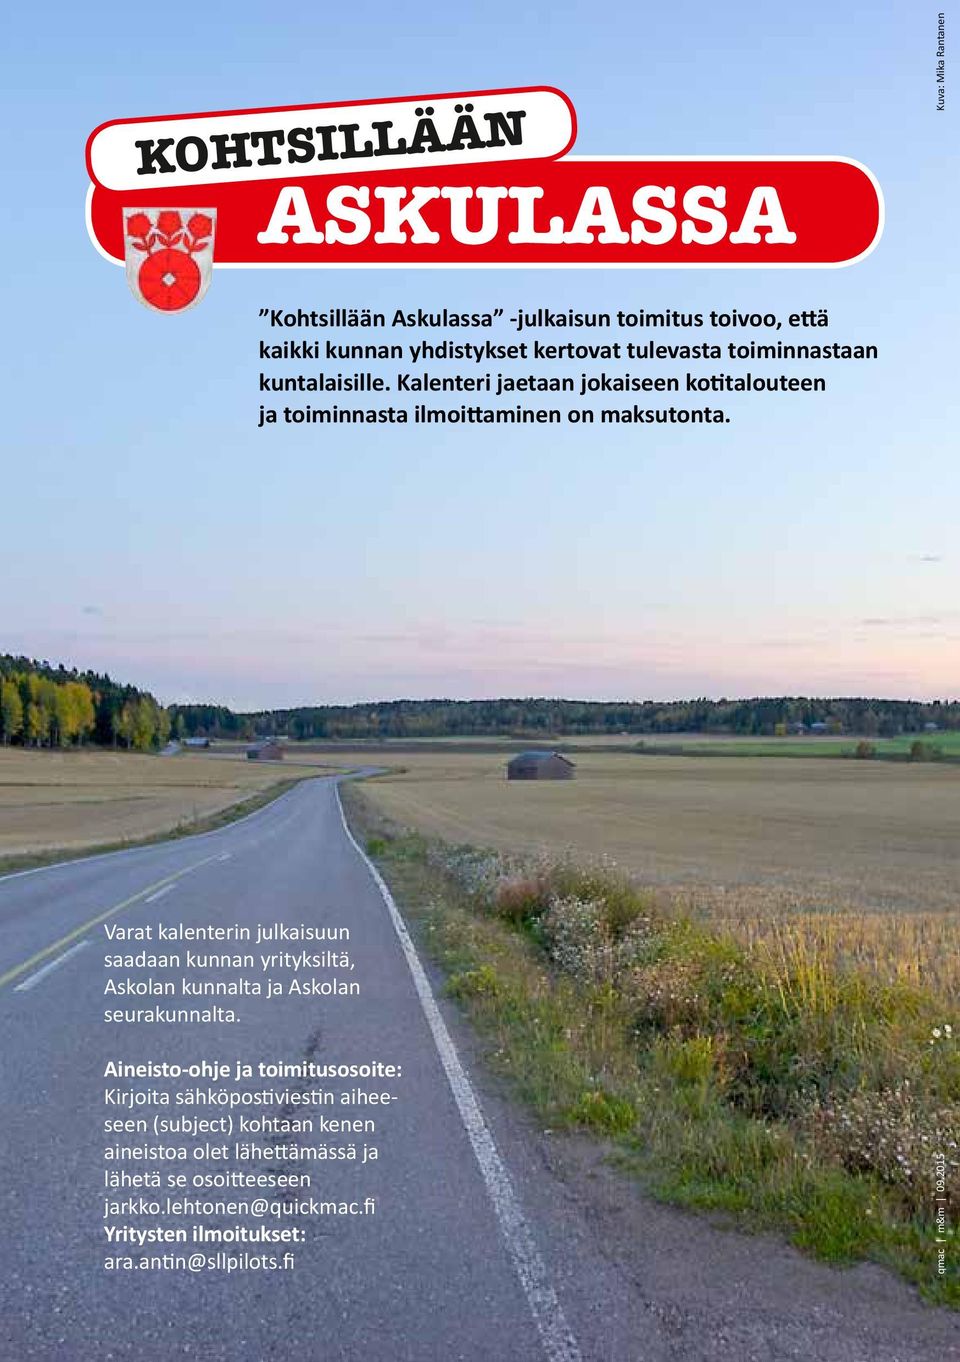 Varat kalenterin julkaisuun saadaan kunnan yrityksiltä, Askolan kunnalta ja Askolan seurakunnalta.